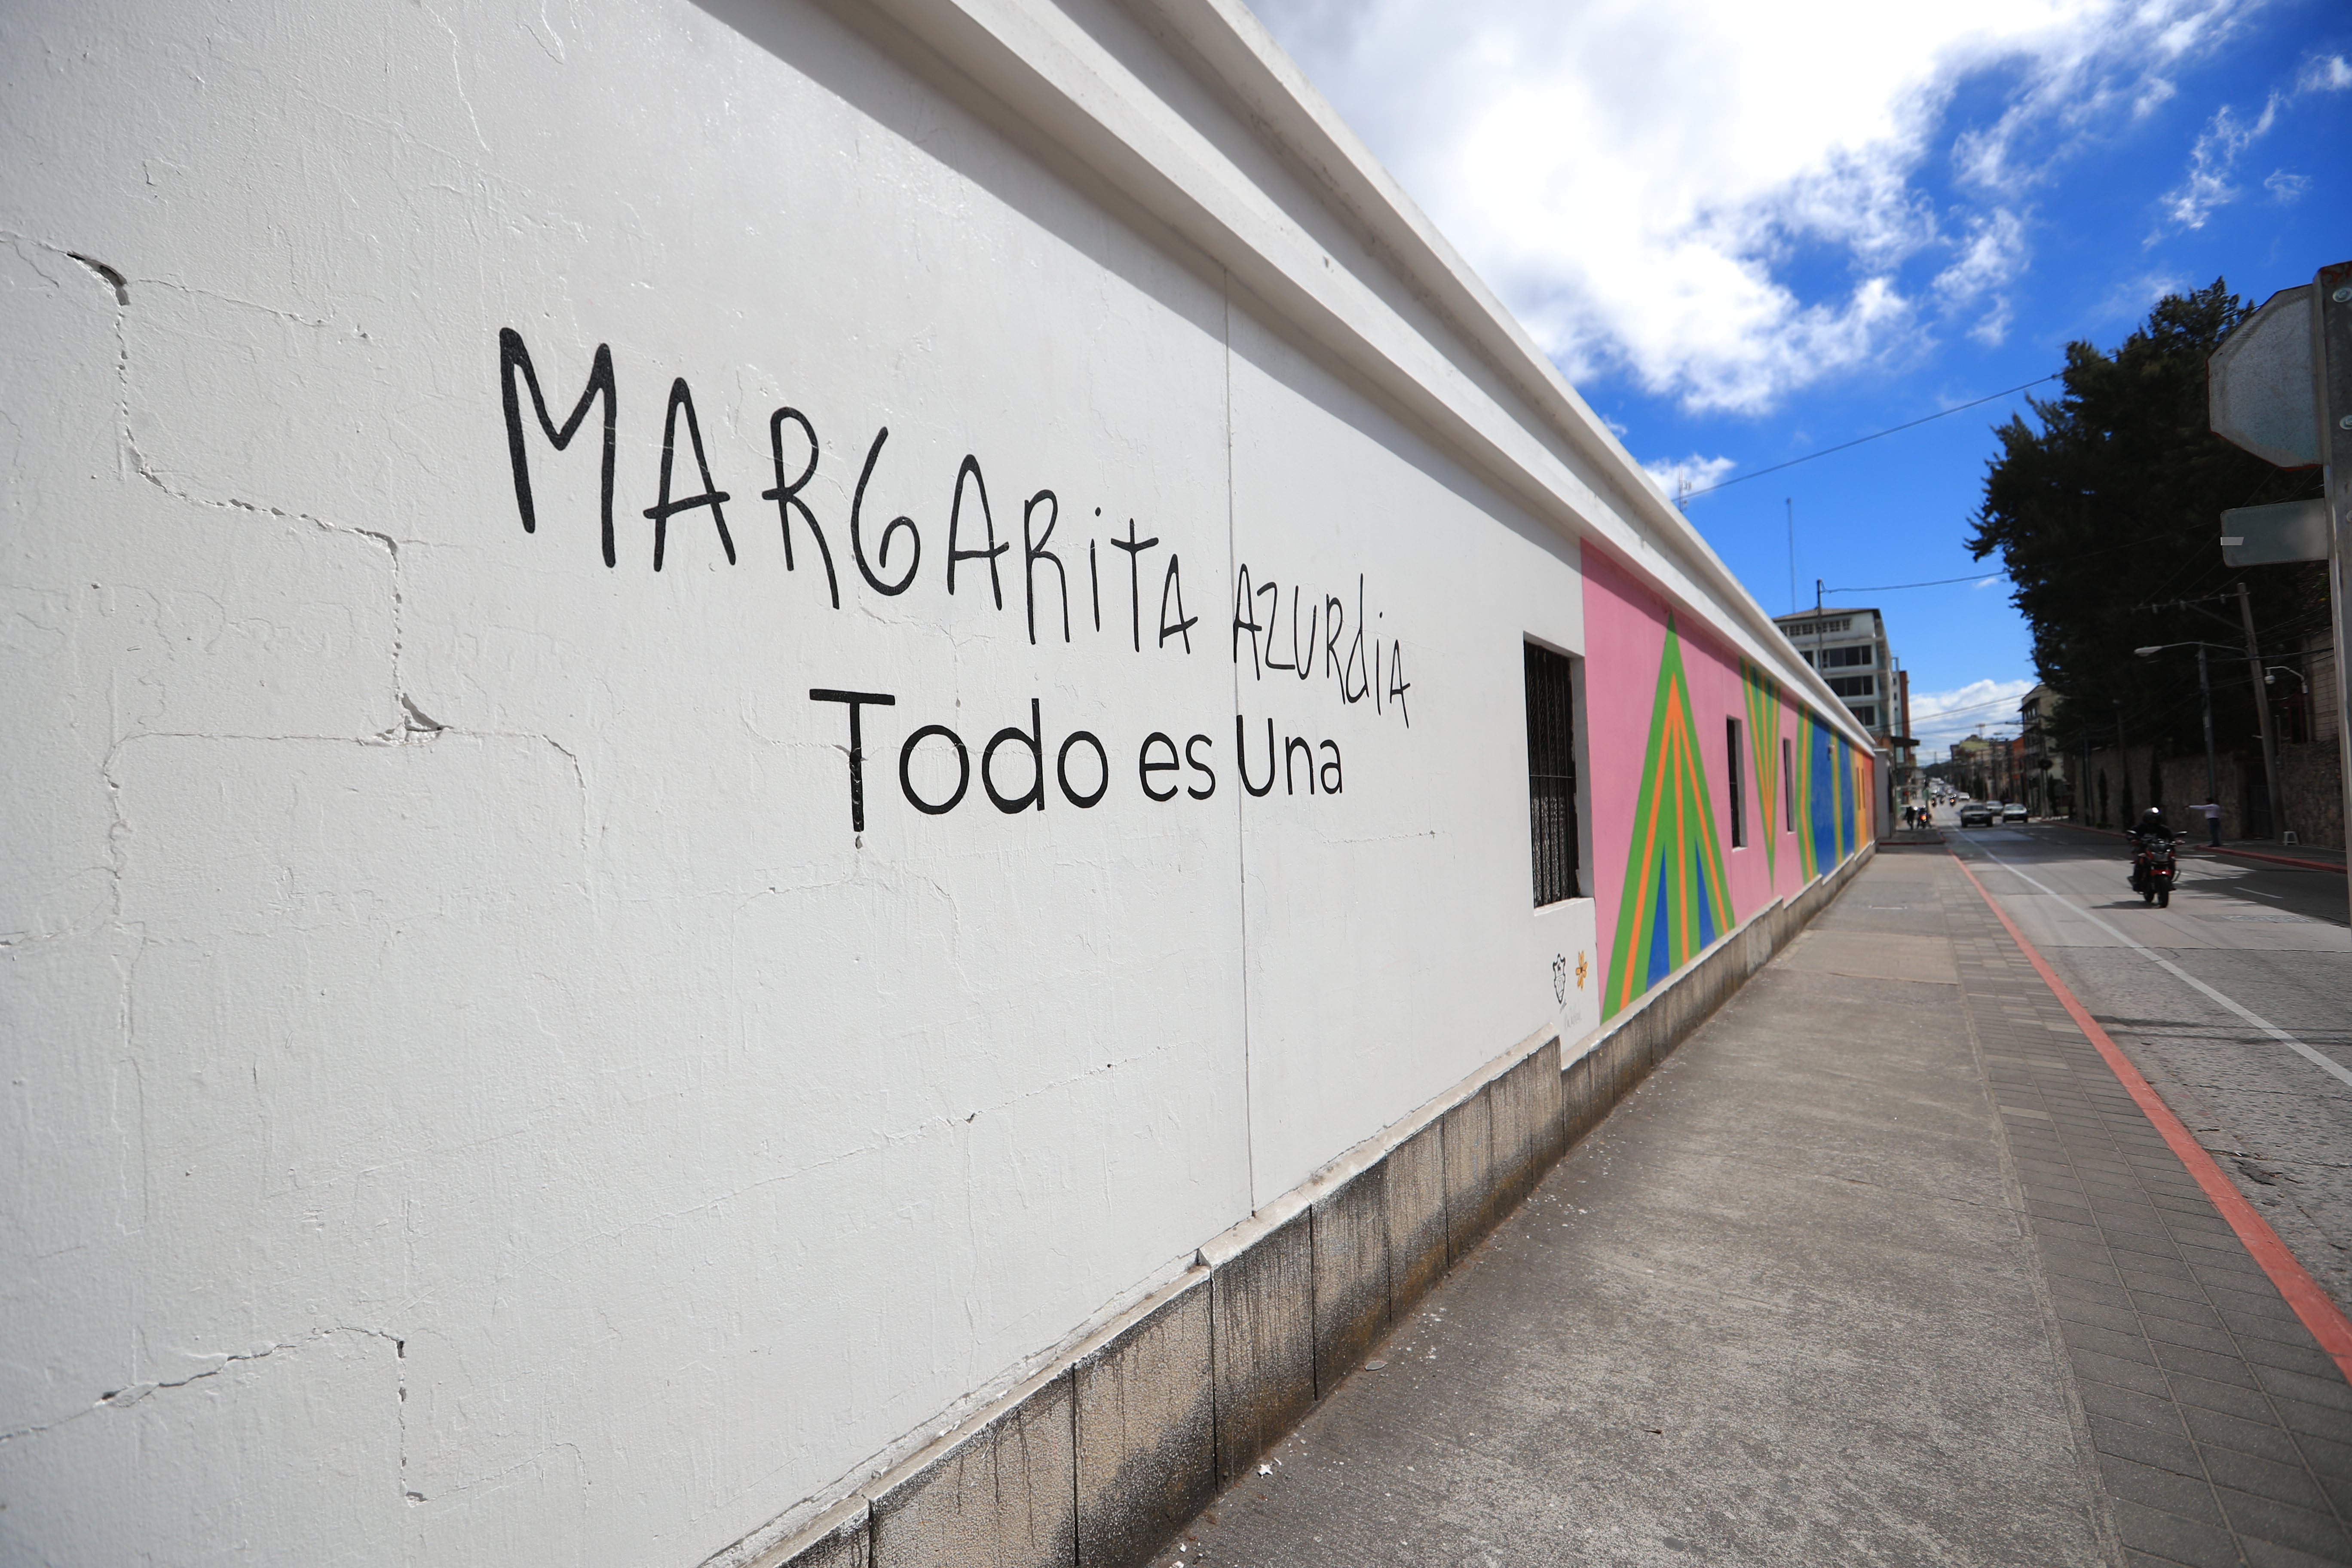 El mural dedicado a Margarita Azurdia se encuentra en la 7 avenida y 13 calle, zona 1.